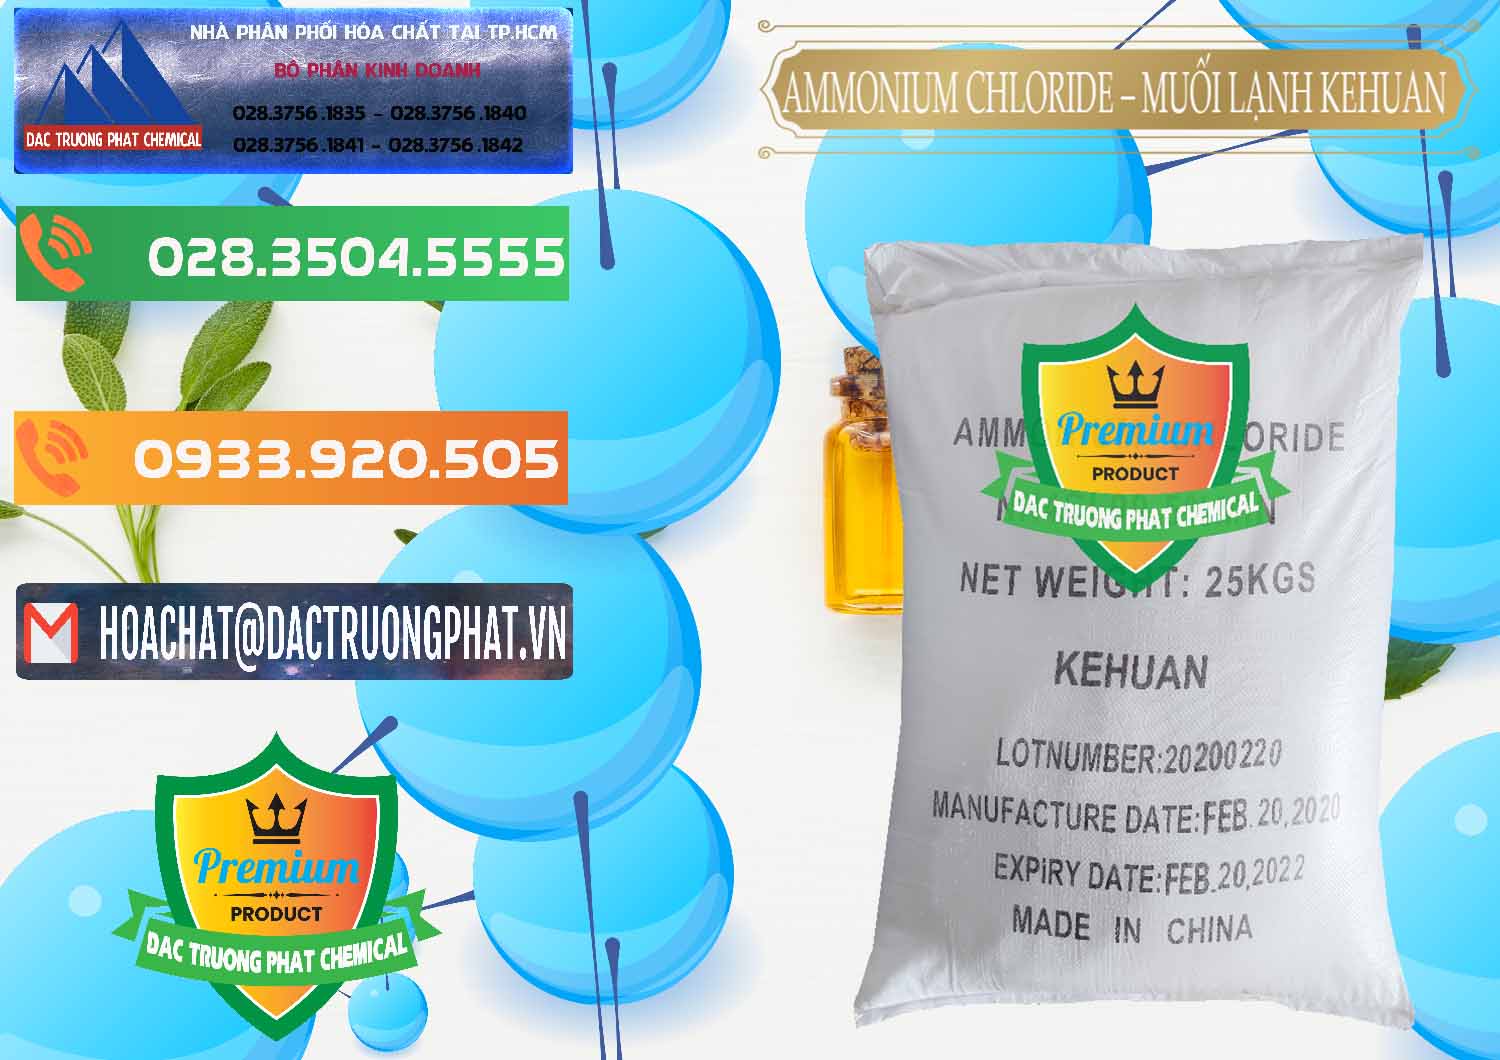 Nhà nhập khẩu _ bán Ammonium Chloride – NH4CL Muối Lạnh Kehuan Trung Quốc China - 0022 - Cty phân phối _ kinh doanh hóa chất tại TP.HCM - hoachatxulynuoc.com.vn